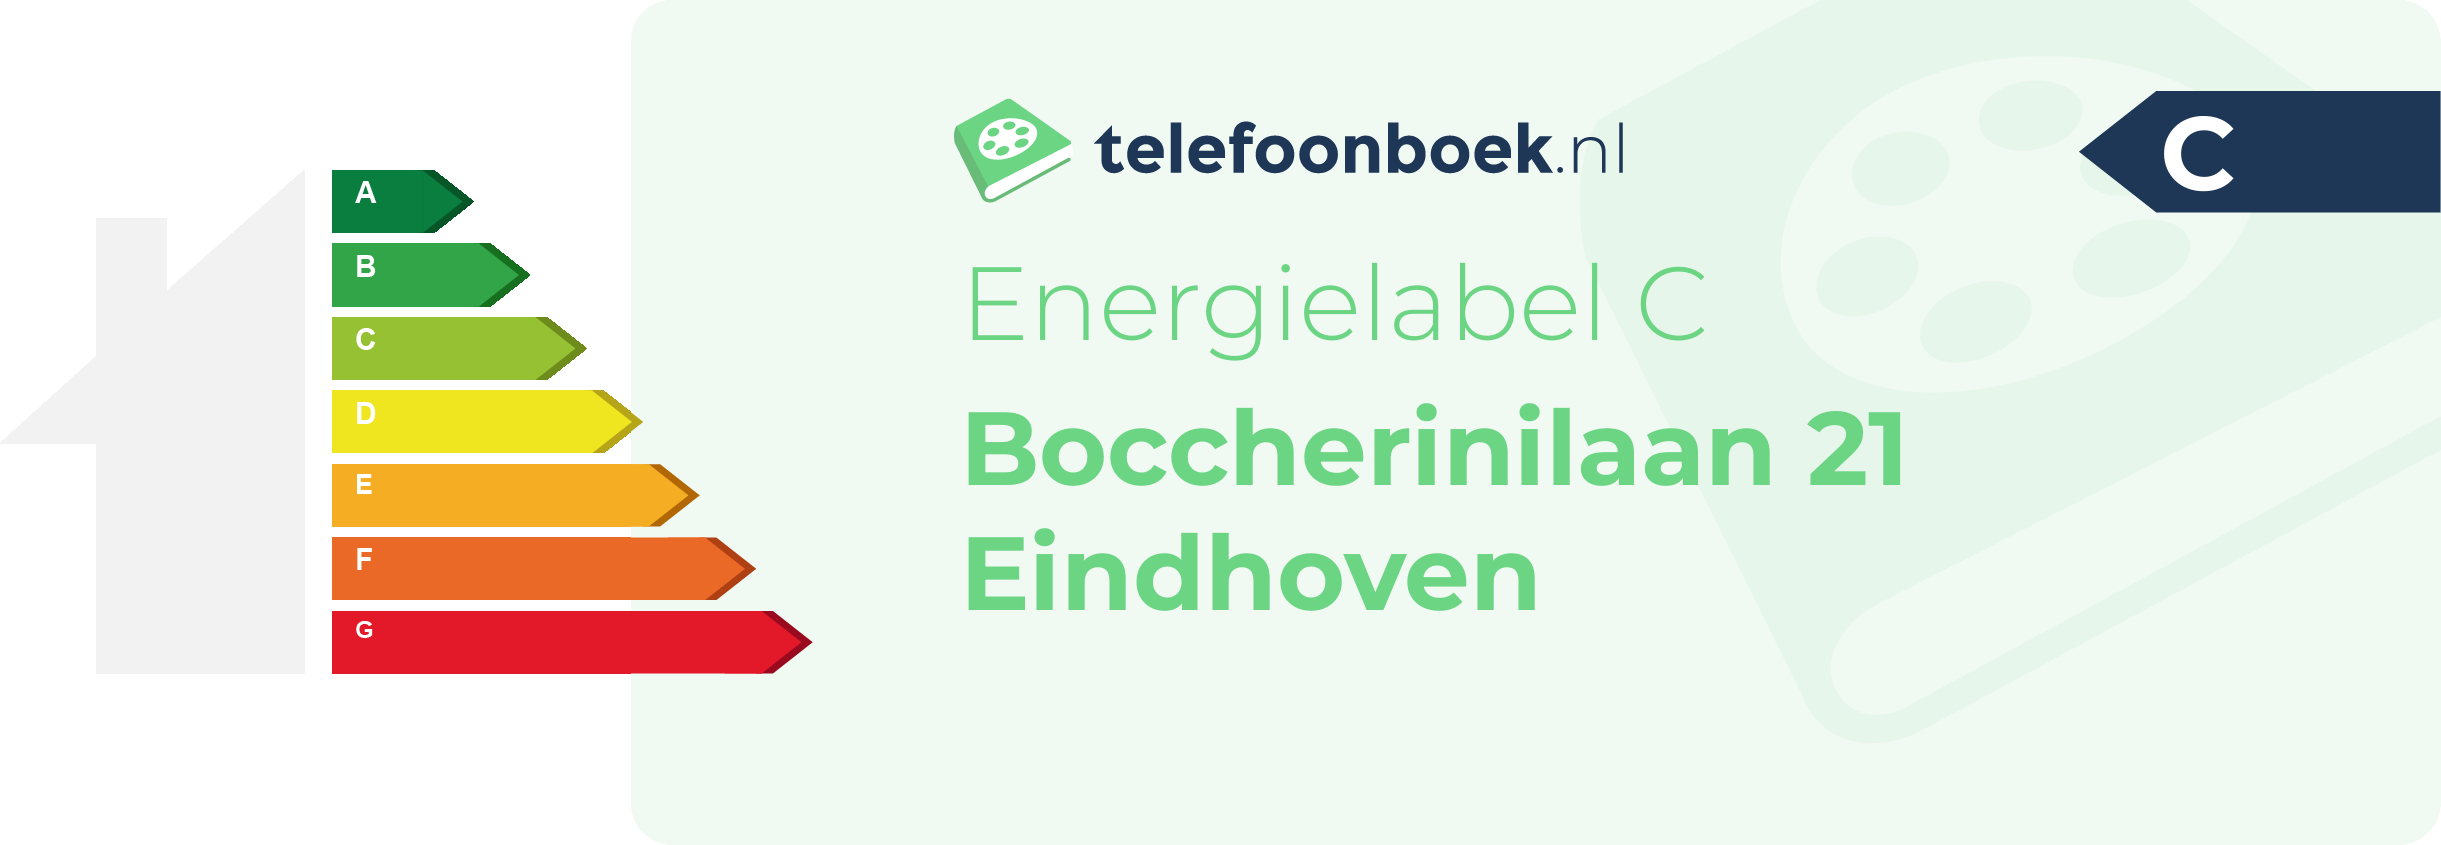 Energielabel Boccherinilaan 21 Eindhoven